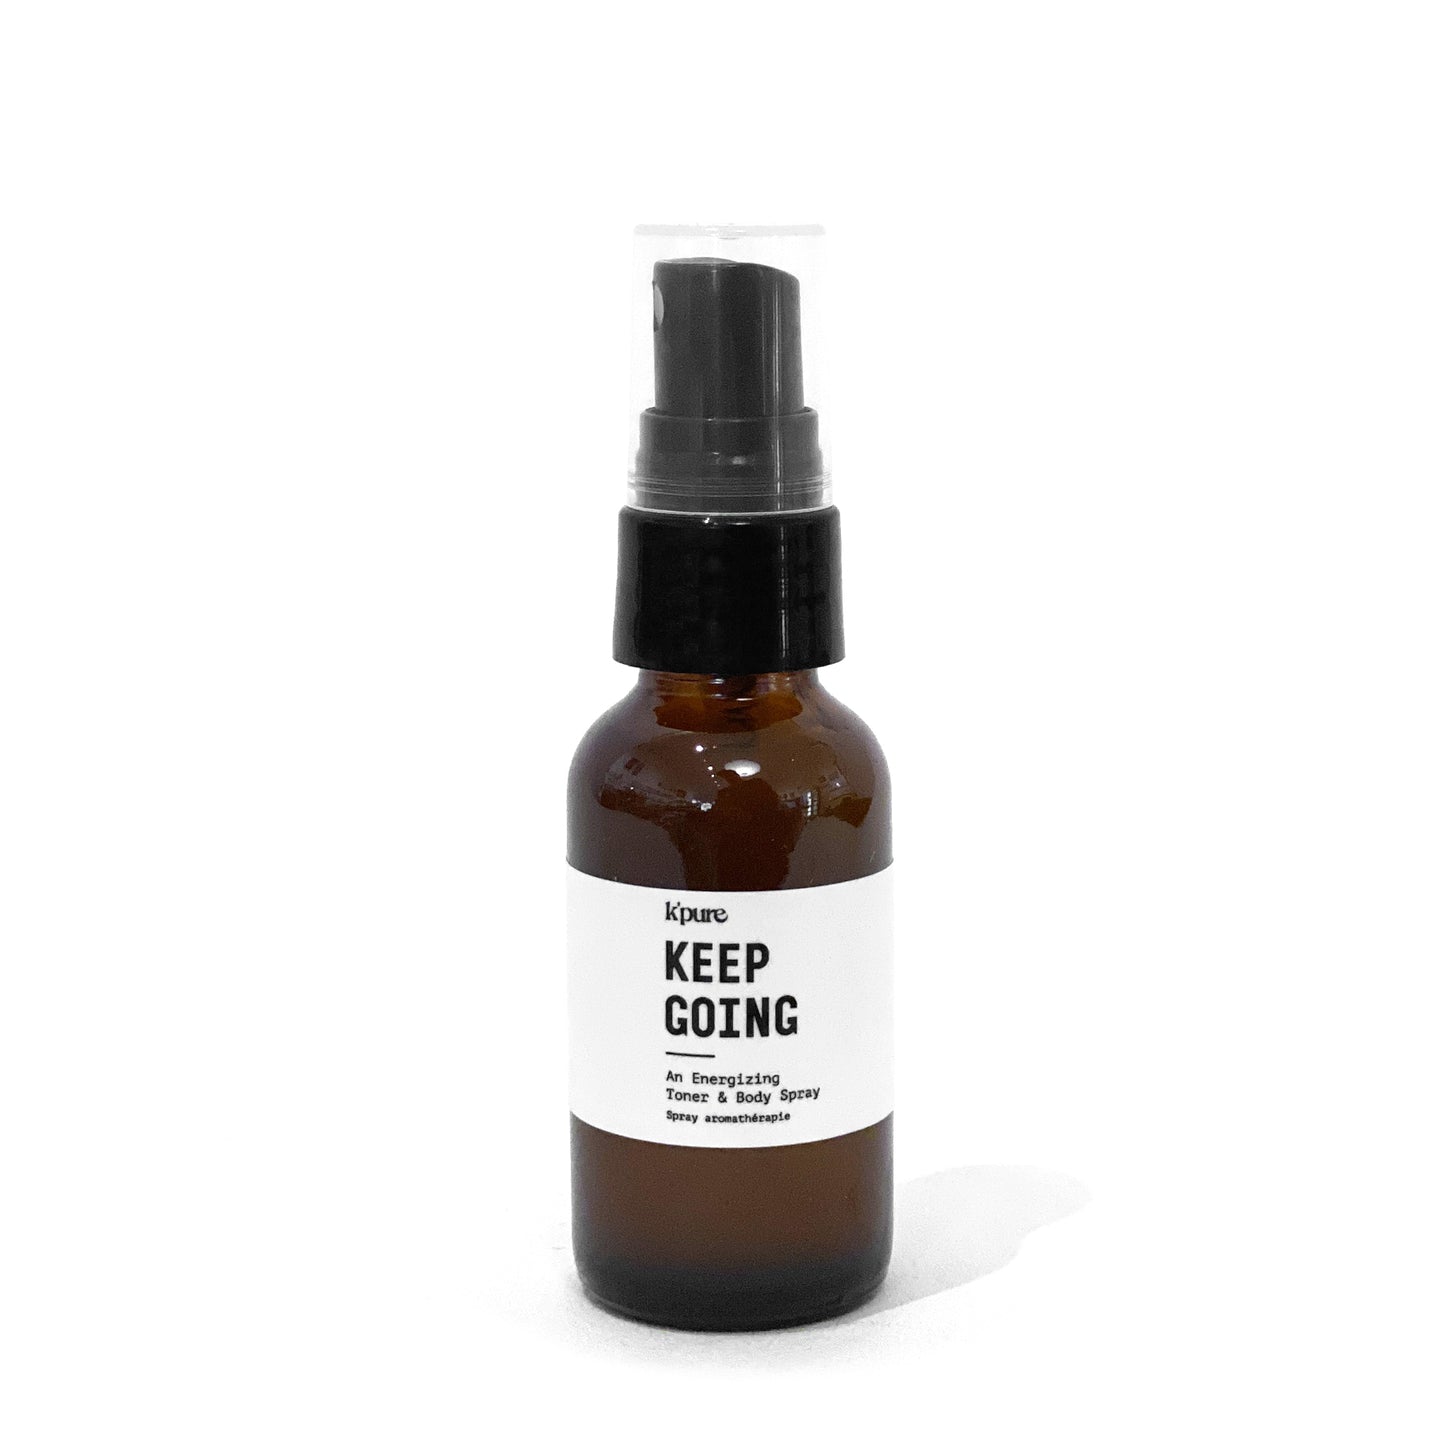 K’Pure Oil Toner, Body & Room Spray